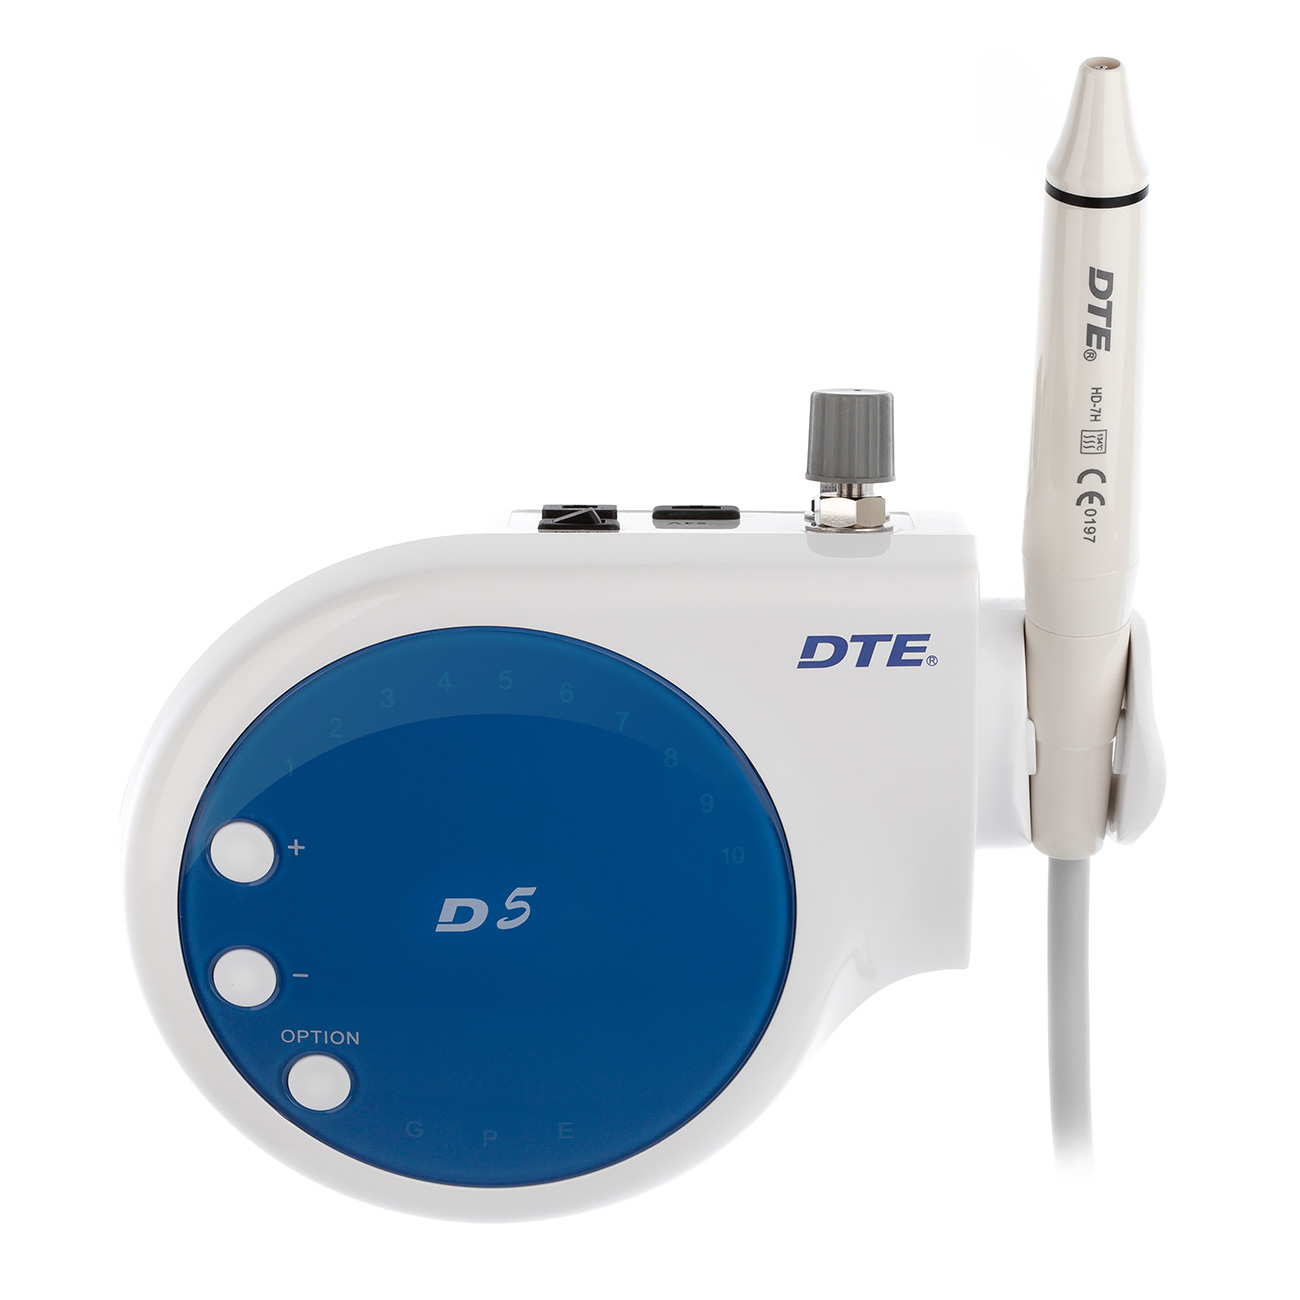   DTE-D5